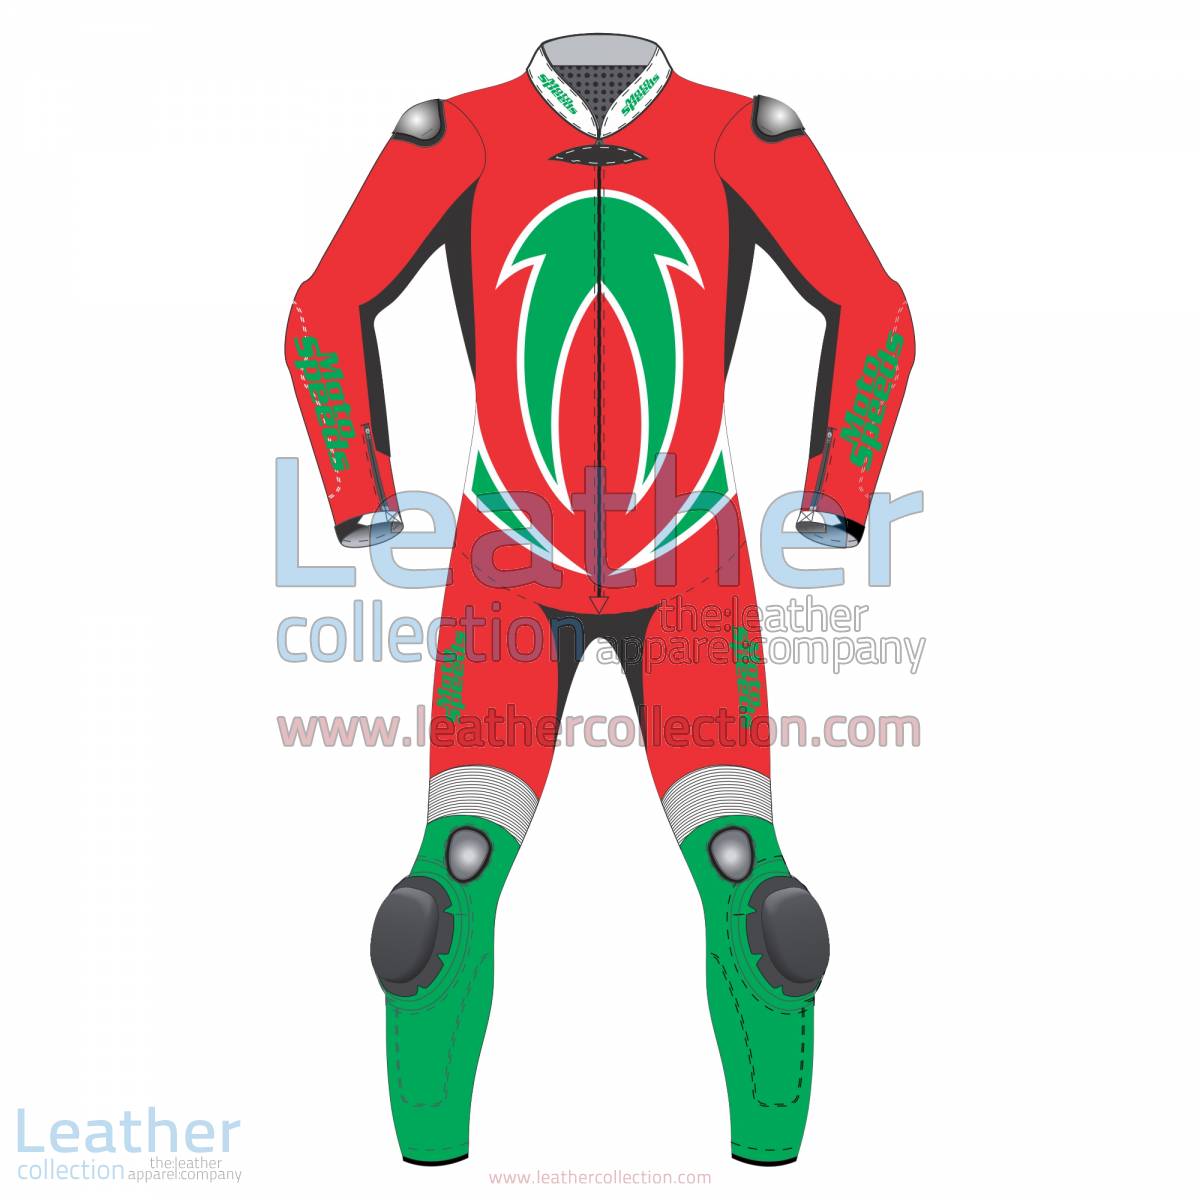 Aero Motorbike Racing Leathers | racing leathers,motorcycle racing leathers